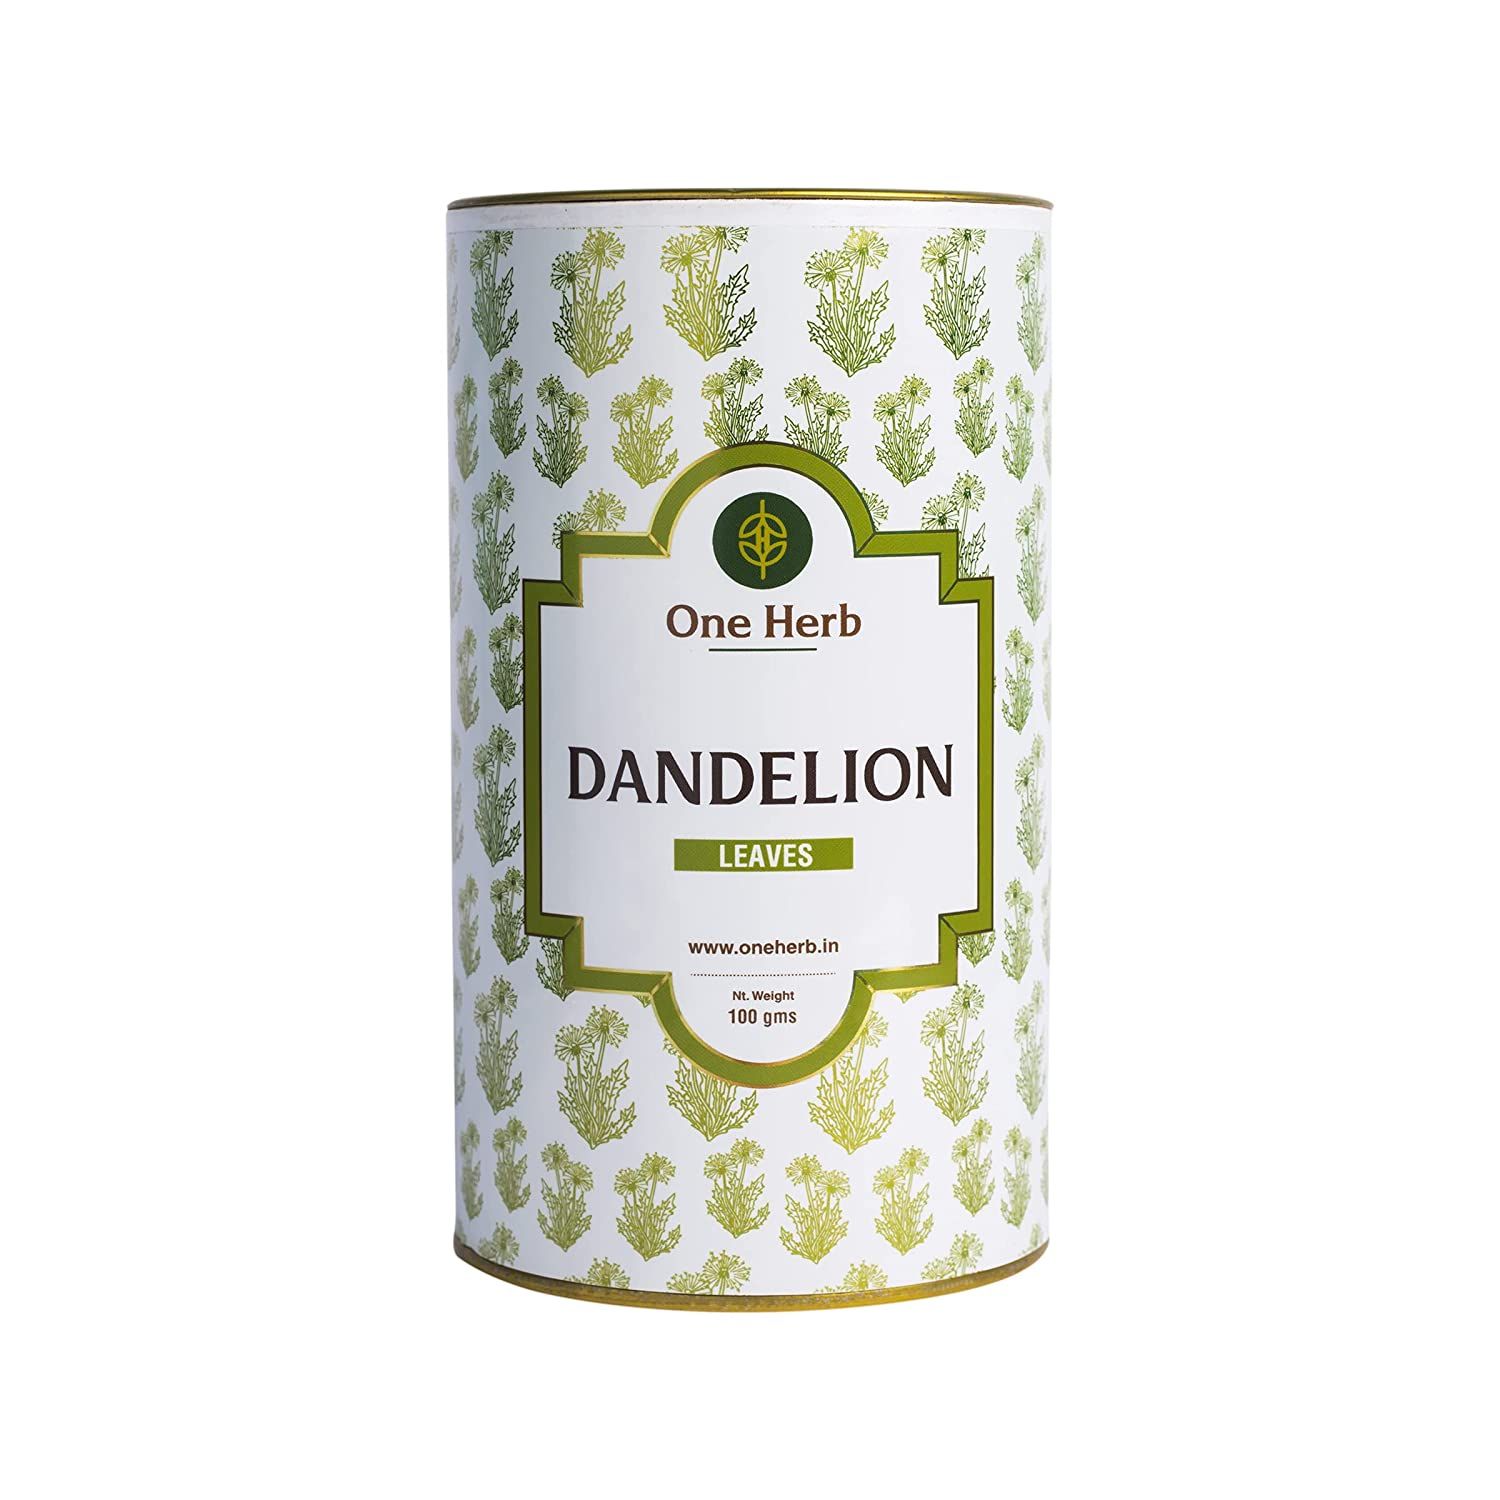 One Herb Dandelion Leaves Tea Image